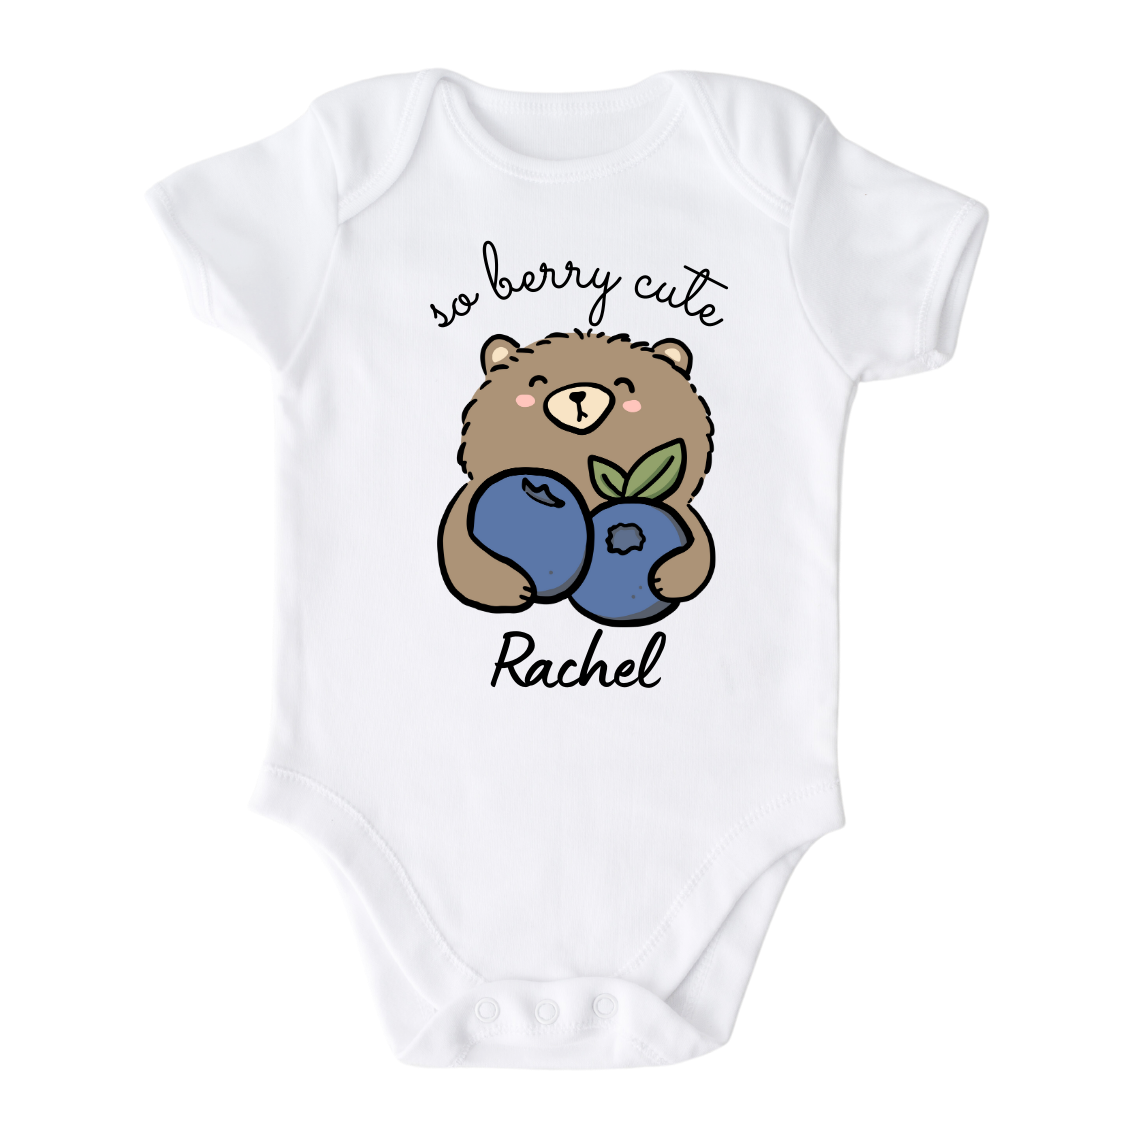 Girls Tshirt - Cute Kid Tshirt - Cute Baby Onesie - Blueberry Baby Onsie - Berry Baby Outfit - Long Sleeve Baby Bodysuit